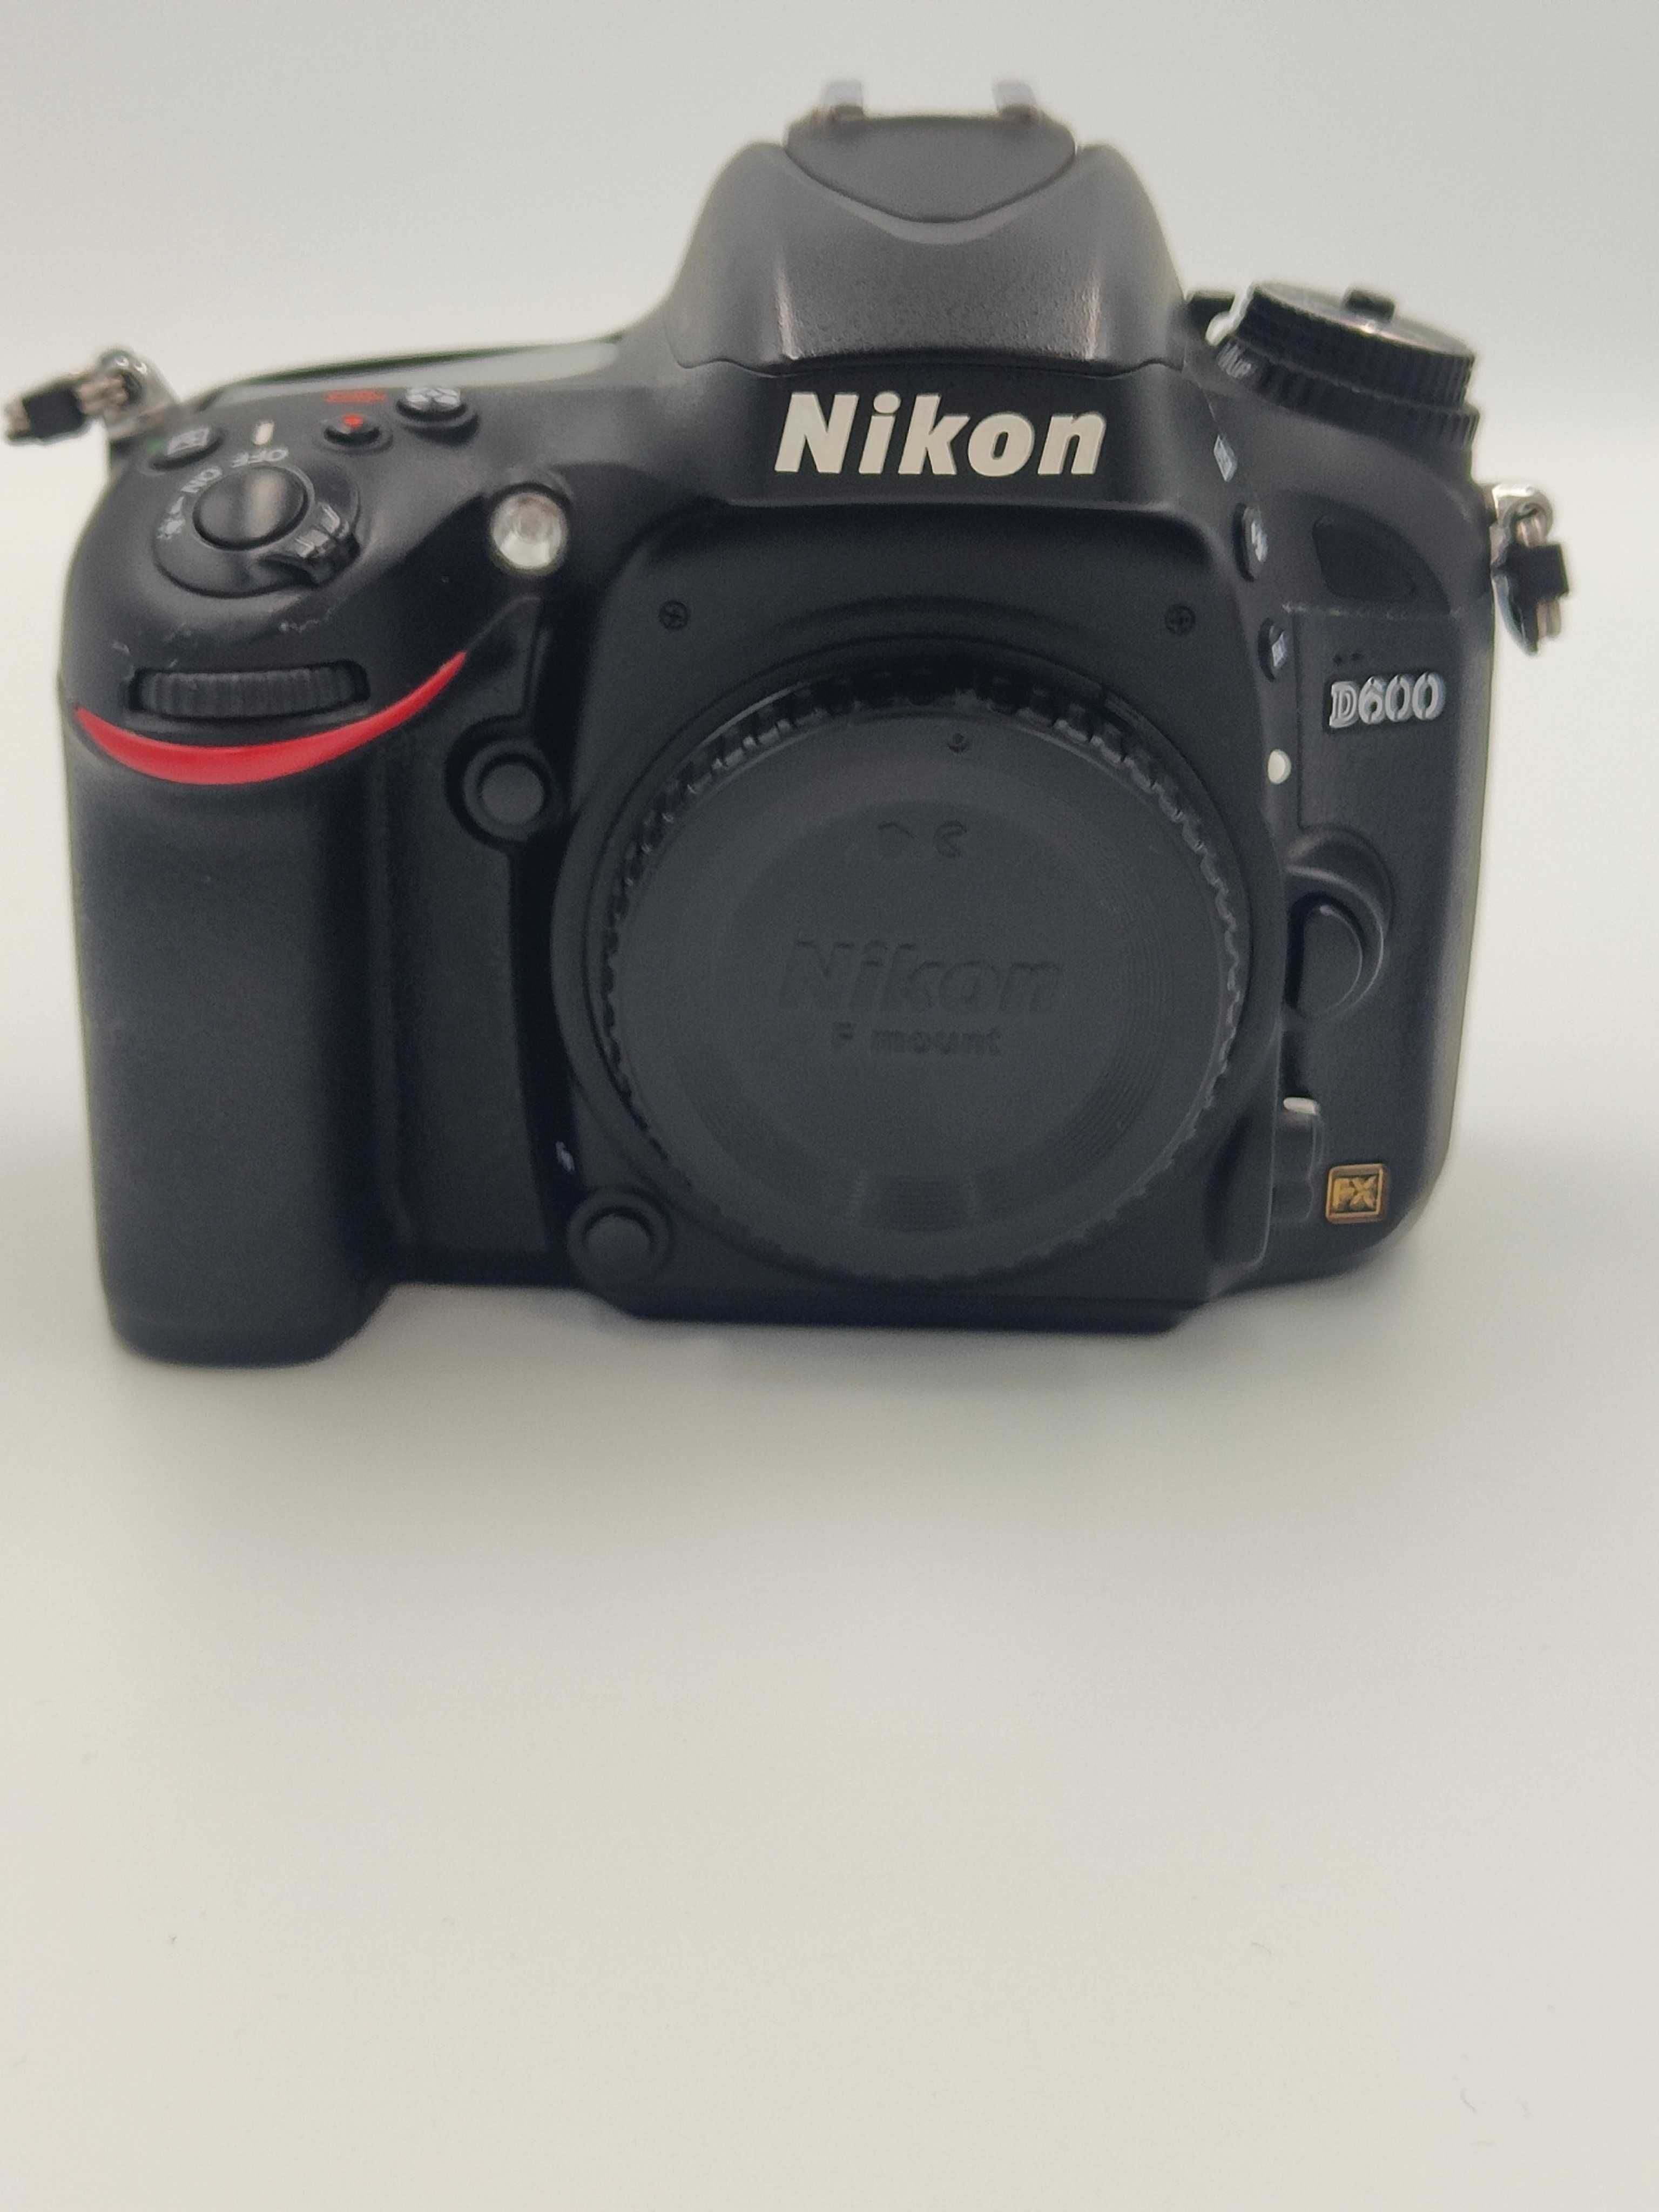 Lustrzanka Nikon D600 - pełna klatka - przebieg migawki 82k